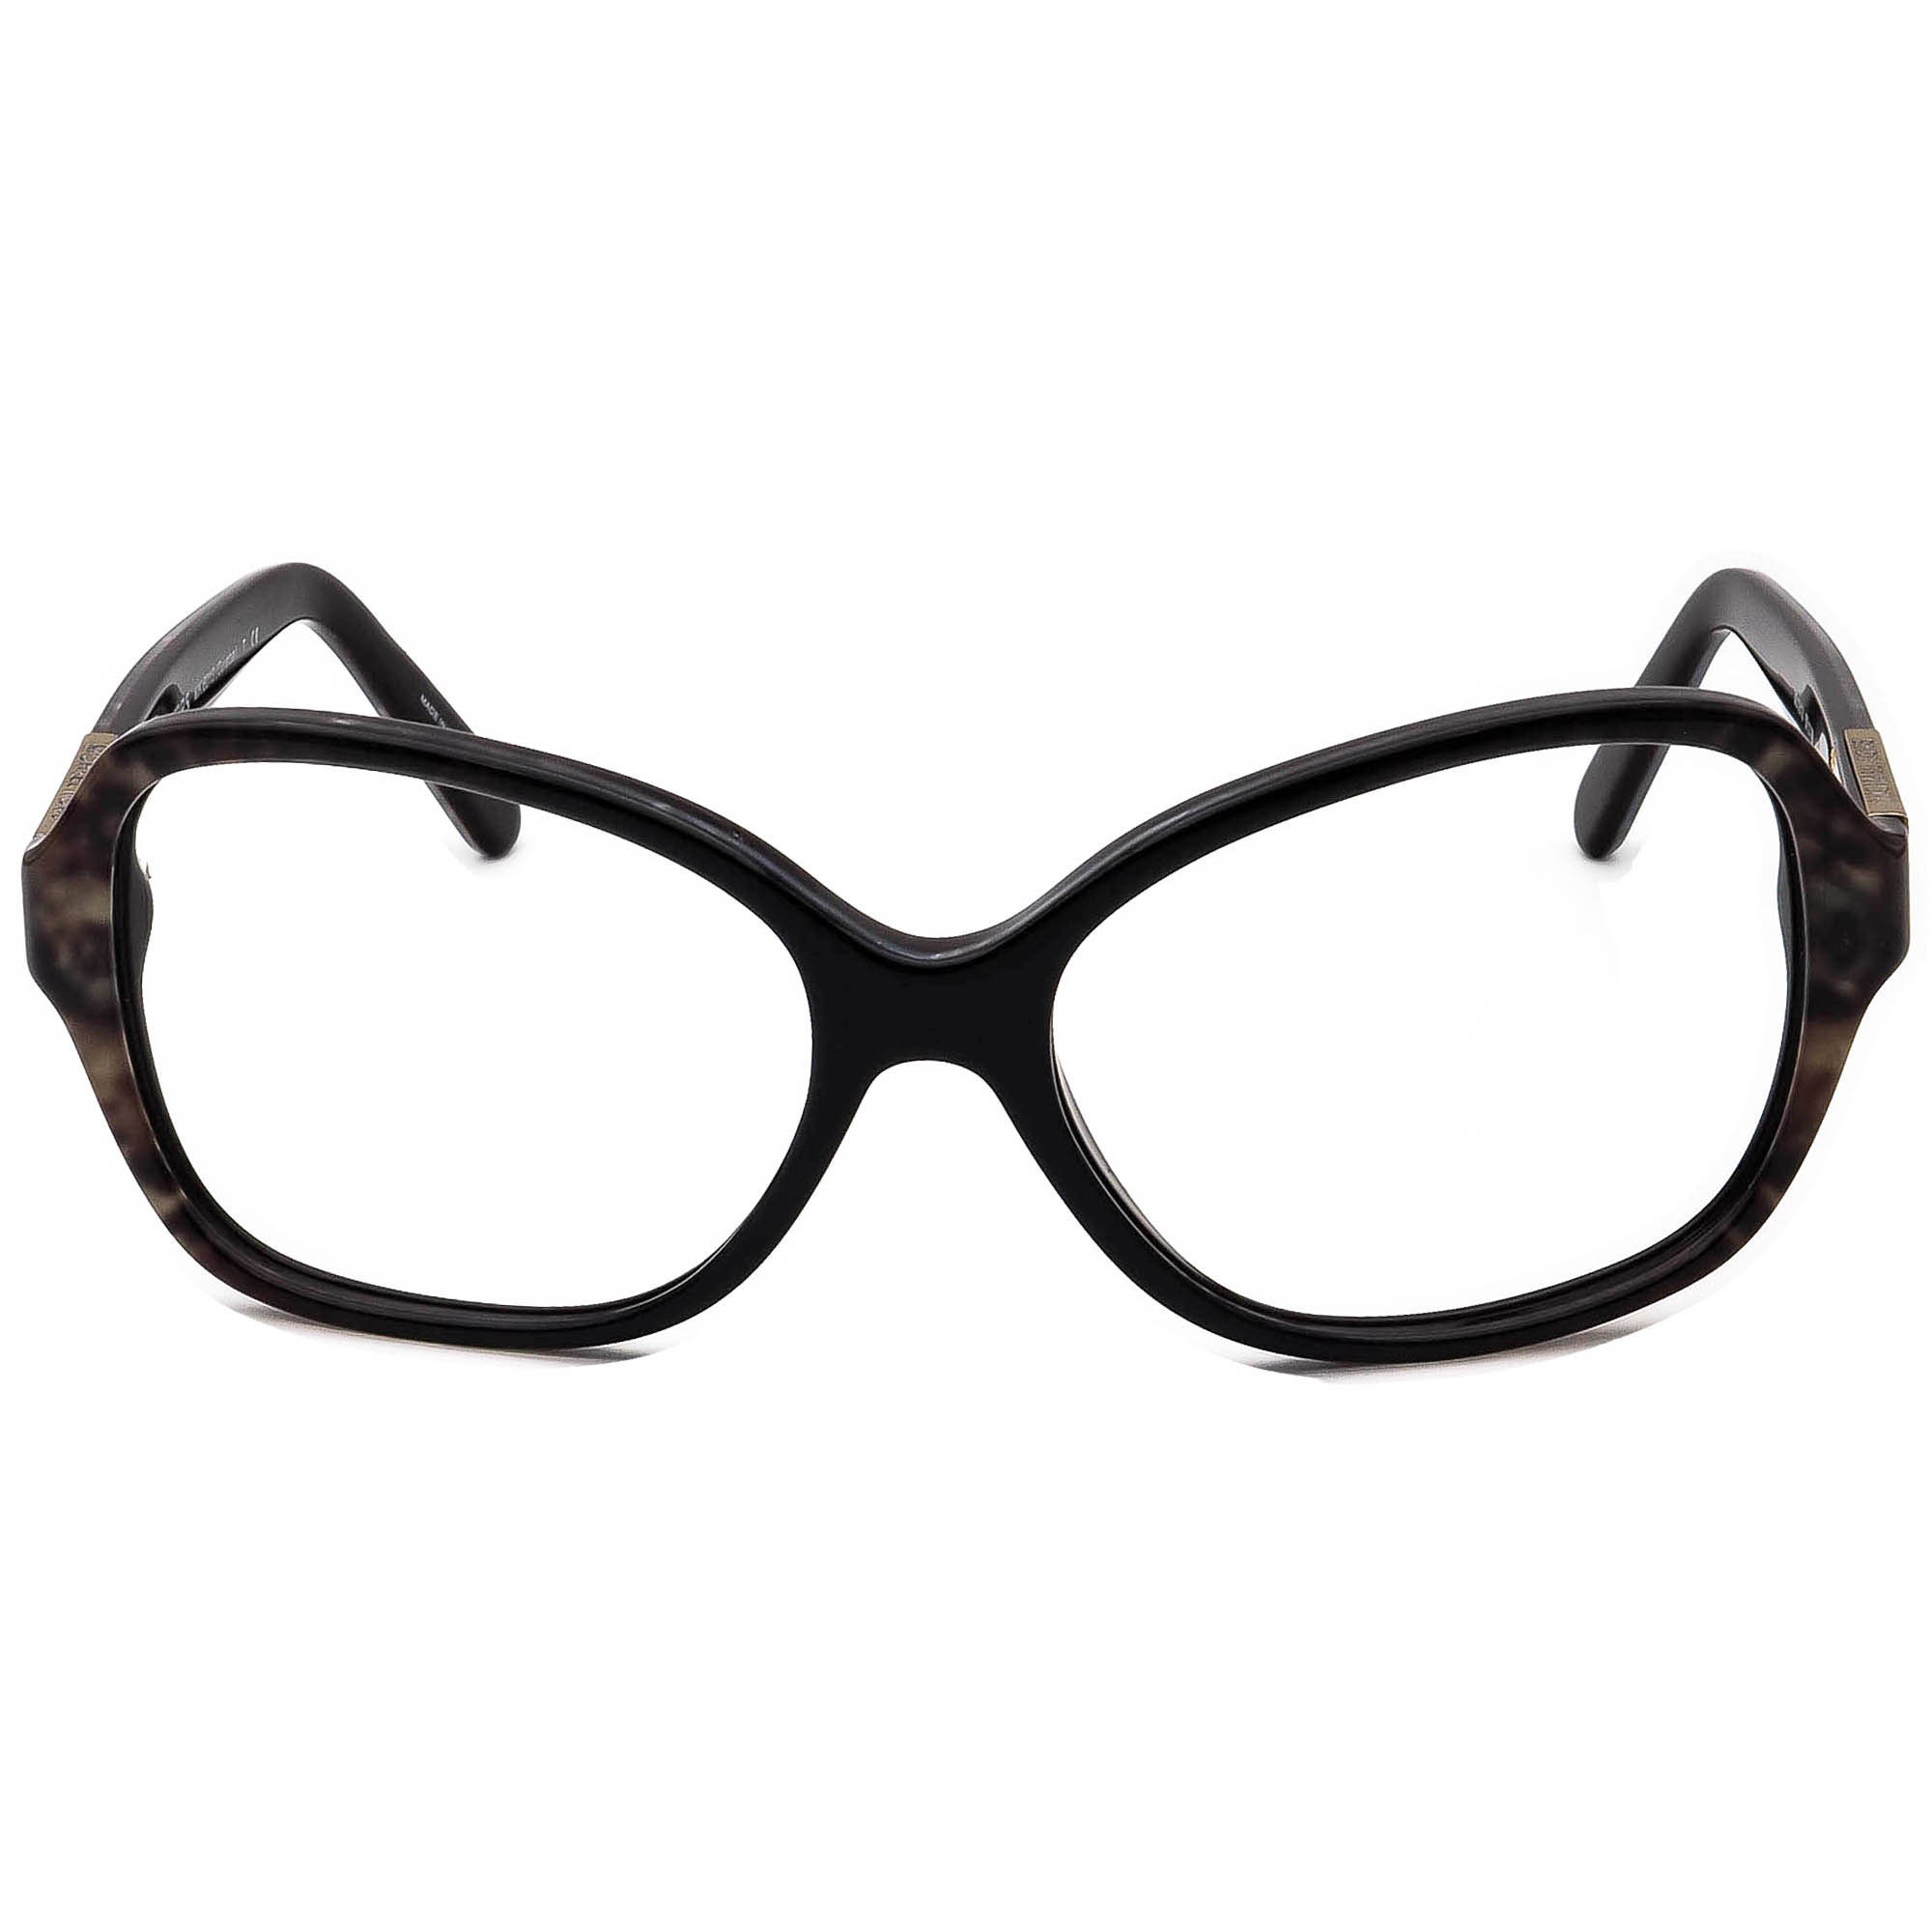 Michael Kors Sunglasses Frame Only MK6013 Cuiaba 301913 Dark | Etsy